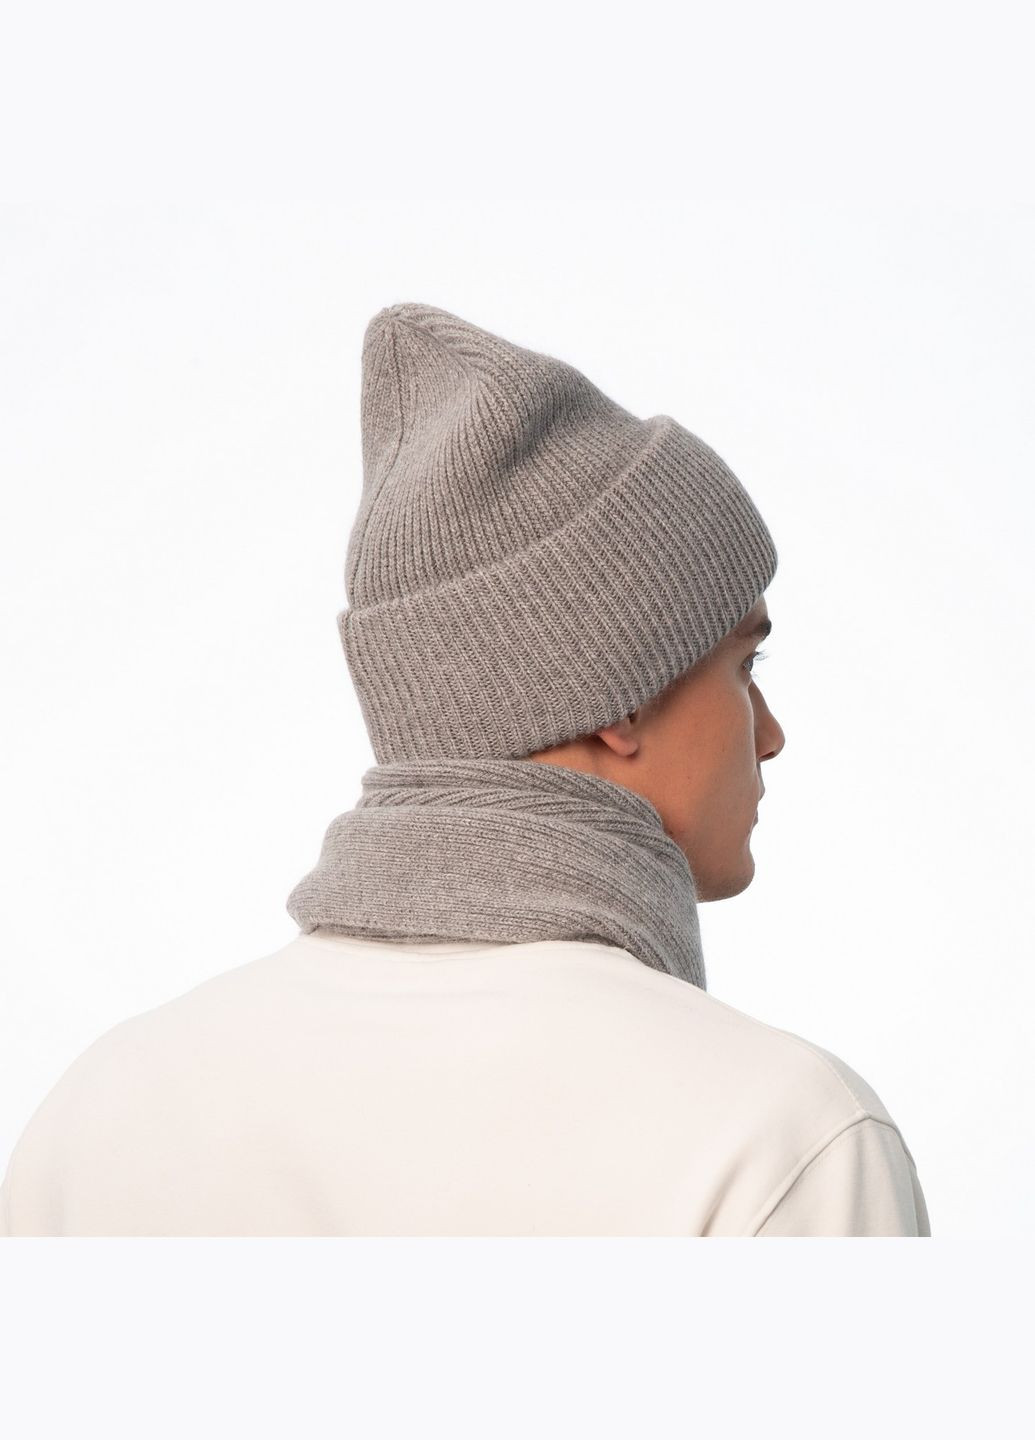 Набор шапка бини + шарф мужской шерсть серый GEORGE 695-000 LuckyLOOK 695-000m (289359555)